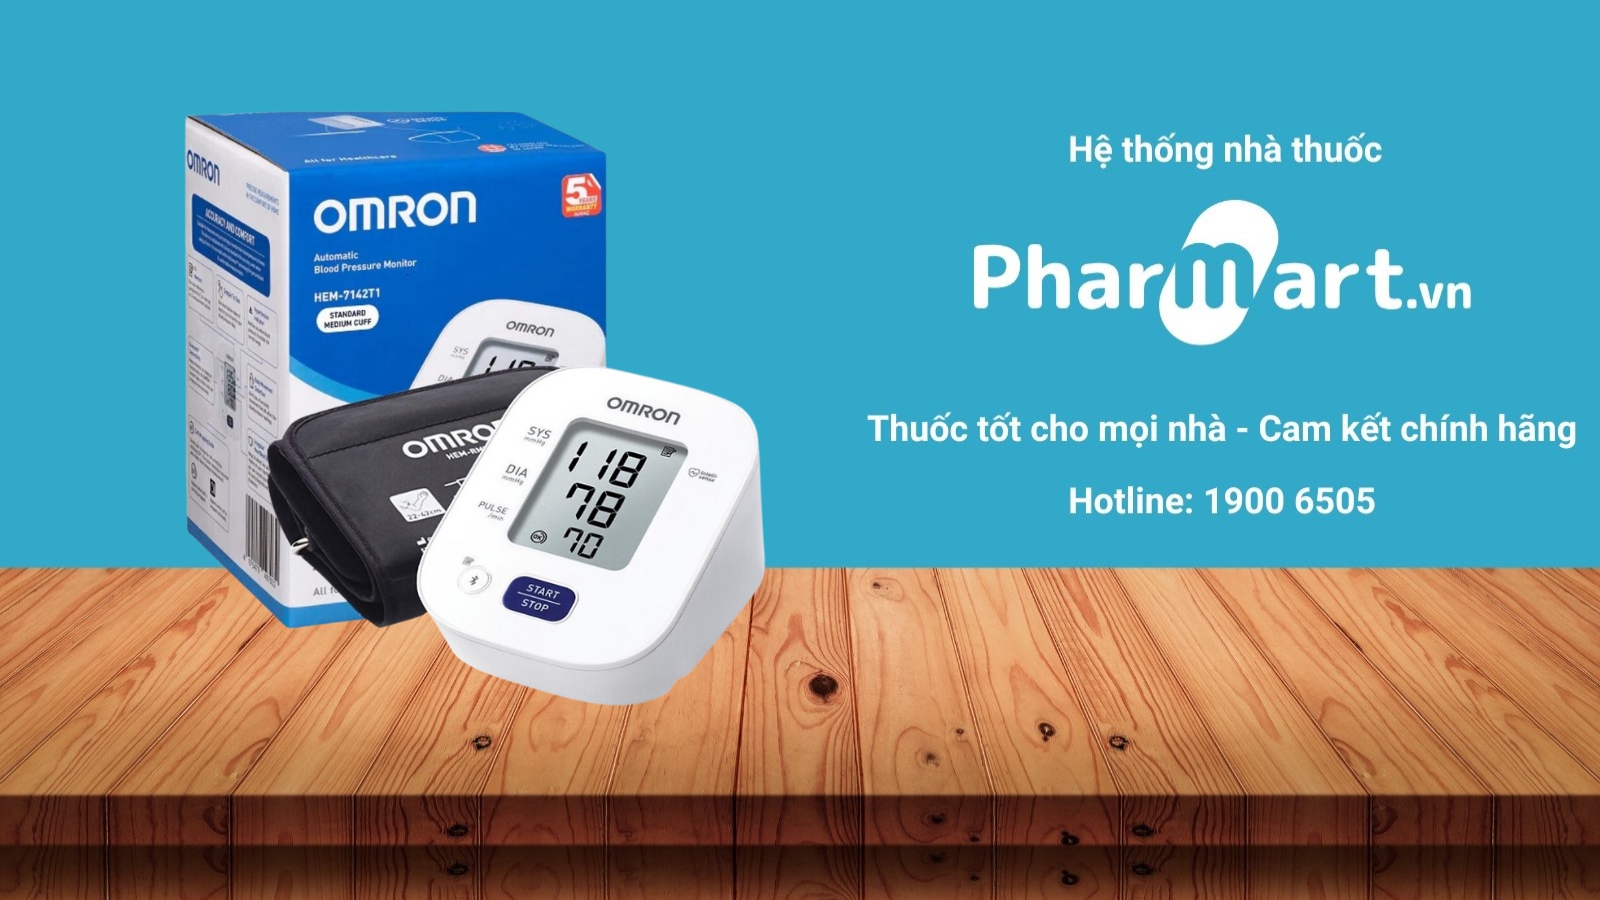 Máy đo huyết áp Omron HEM 7142-T1 được phân phối chính hãng tại nhà thuốc Pharmart